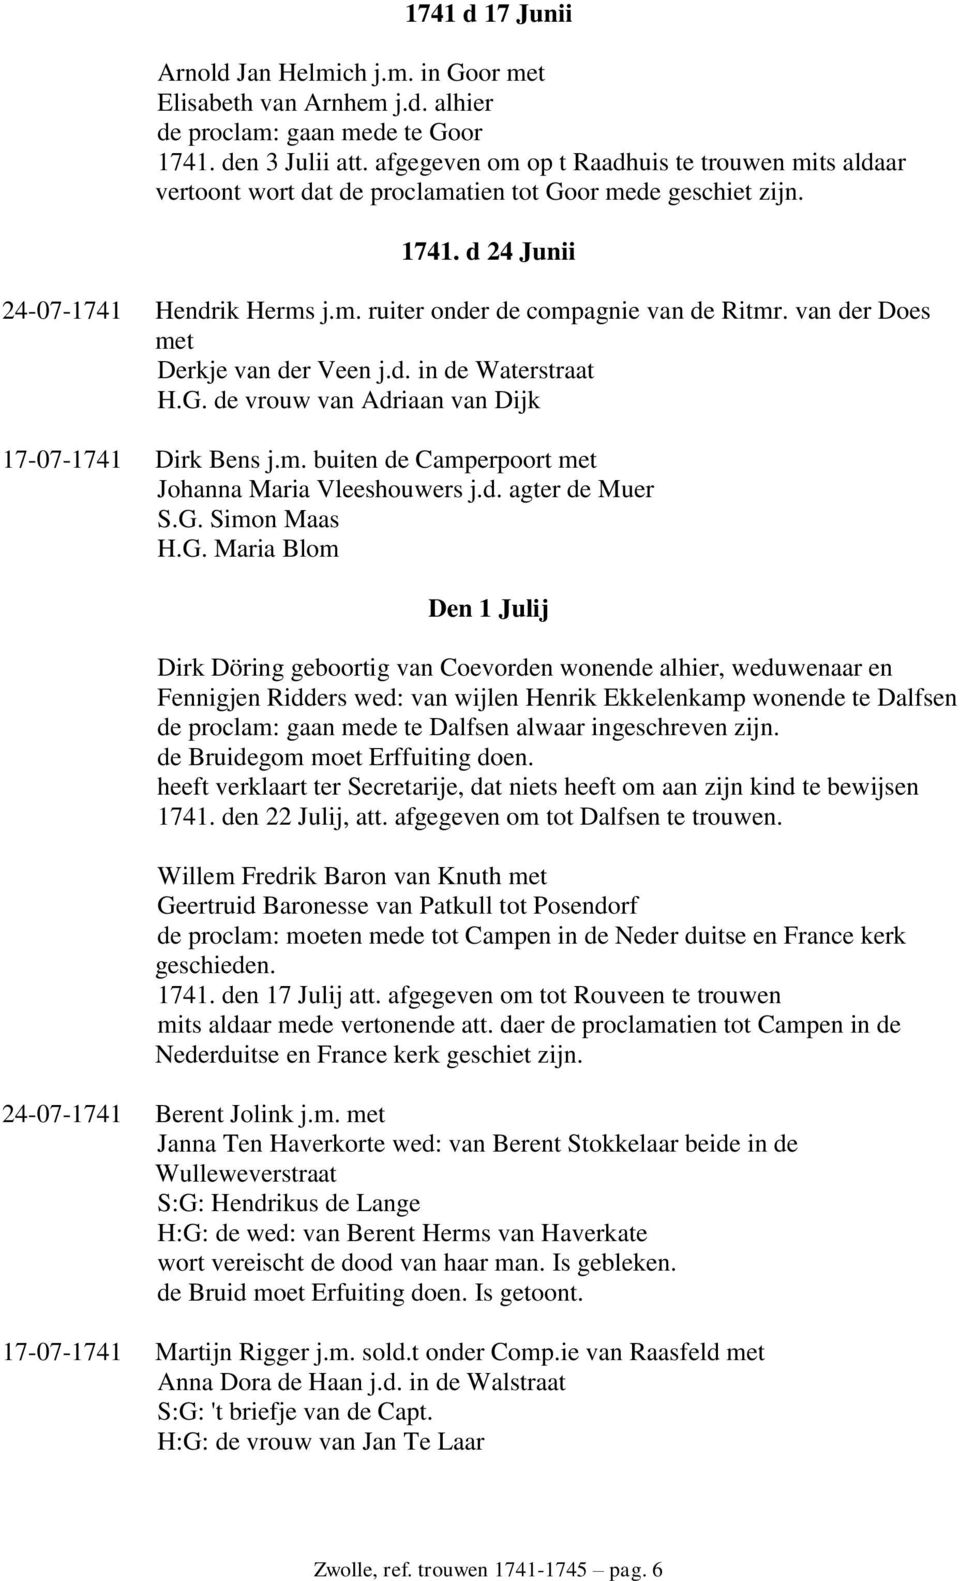 van der Does met Derkje van der Veen j.d. in de Waterstraat H.G. de vrouw van Adriaan van Dijk 17-07-1741 Dirk Bens j.m. buiten de Camperpoort met Johanna Maria Vleeshouwers j.d. agter de Muer S.G. Simon Maas H.